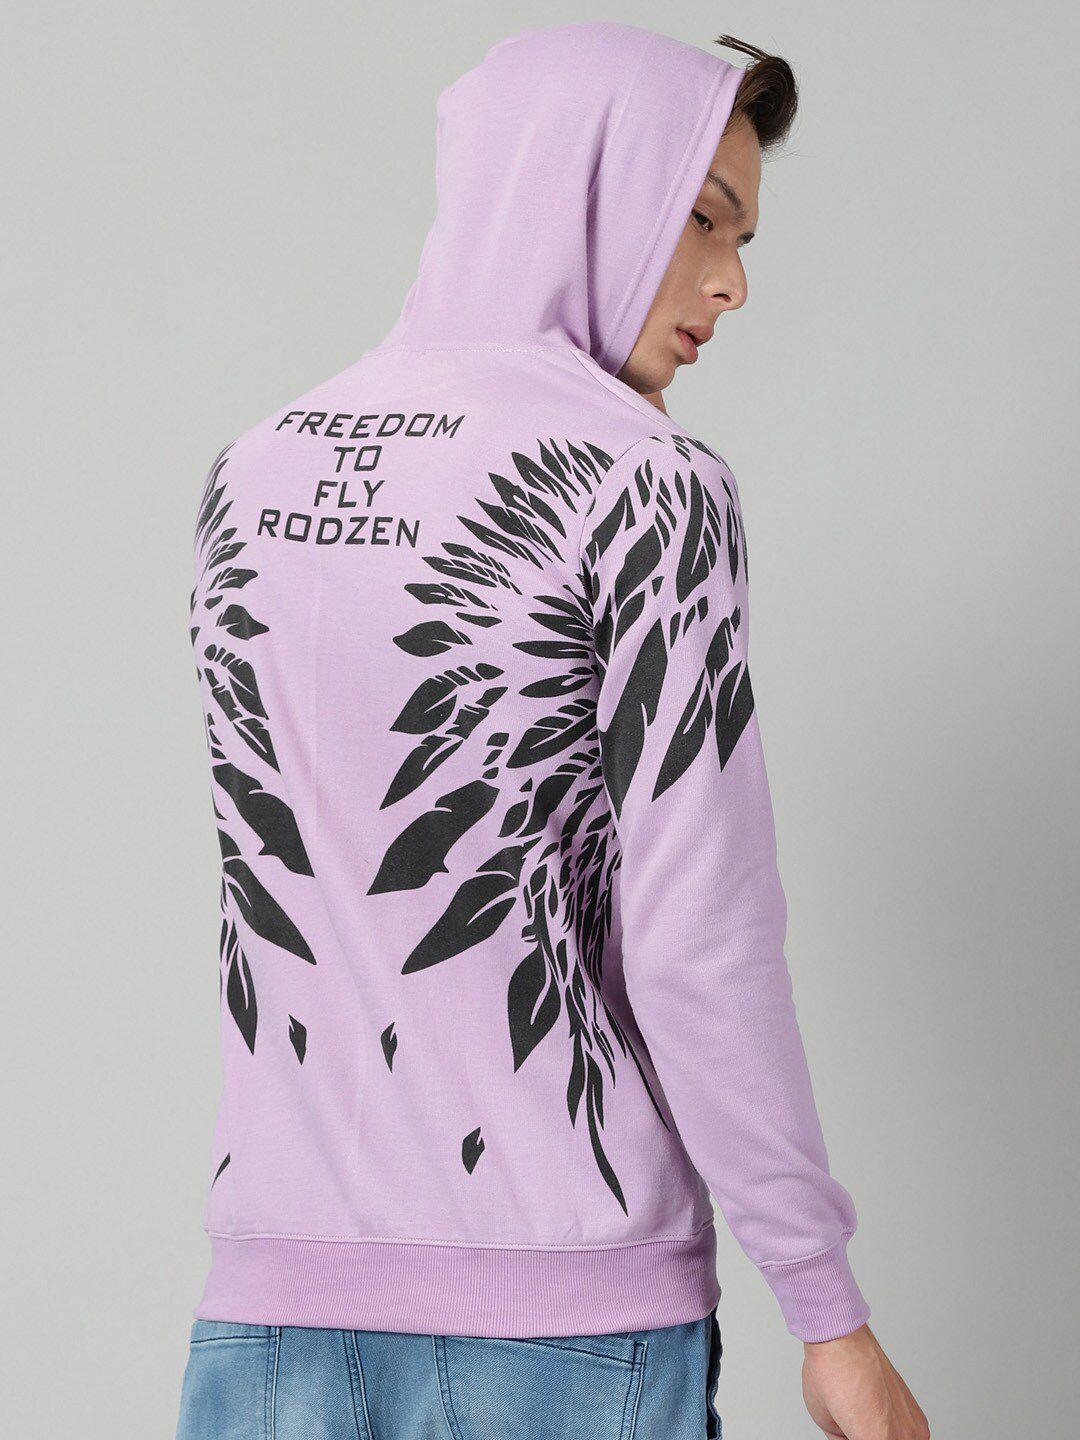 rodzen-graphic-printed-hooded-fleece-pullover